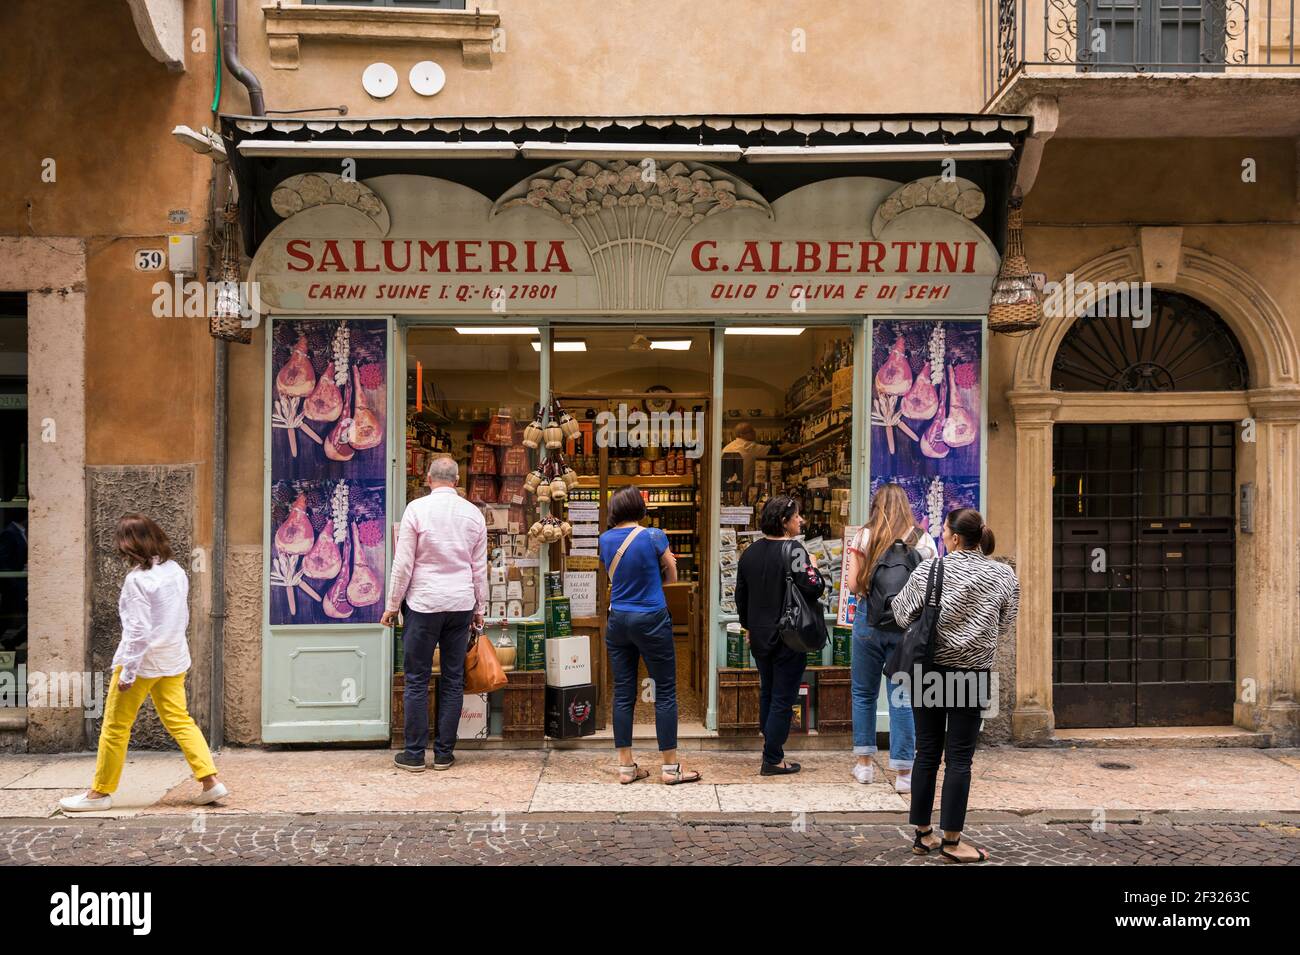 Italien, Verona, Salumeria mit Menschen vor. Eine Salumeria ist ein Lebensmittelproduzent und Einzelhandelsgeschäft, das Salumi und andere Lebensmittel produziert. Stockfoto